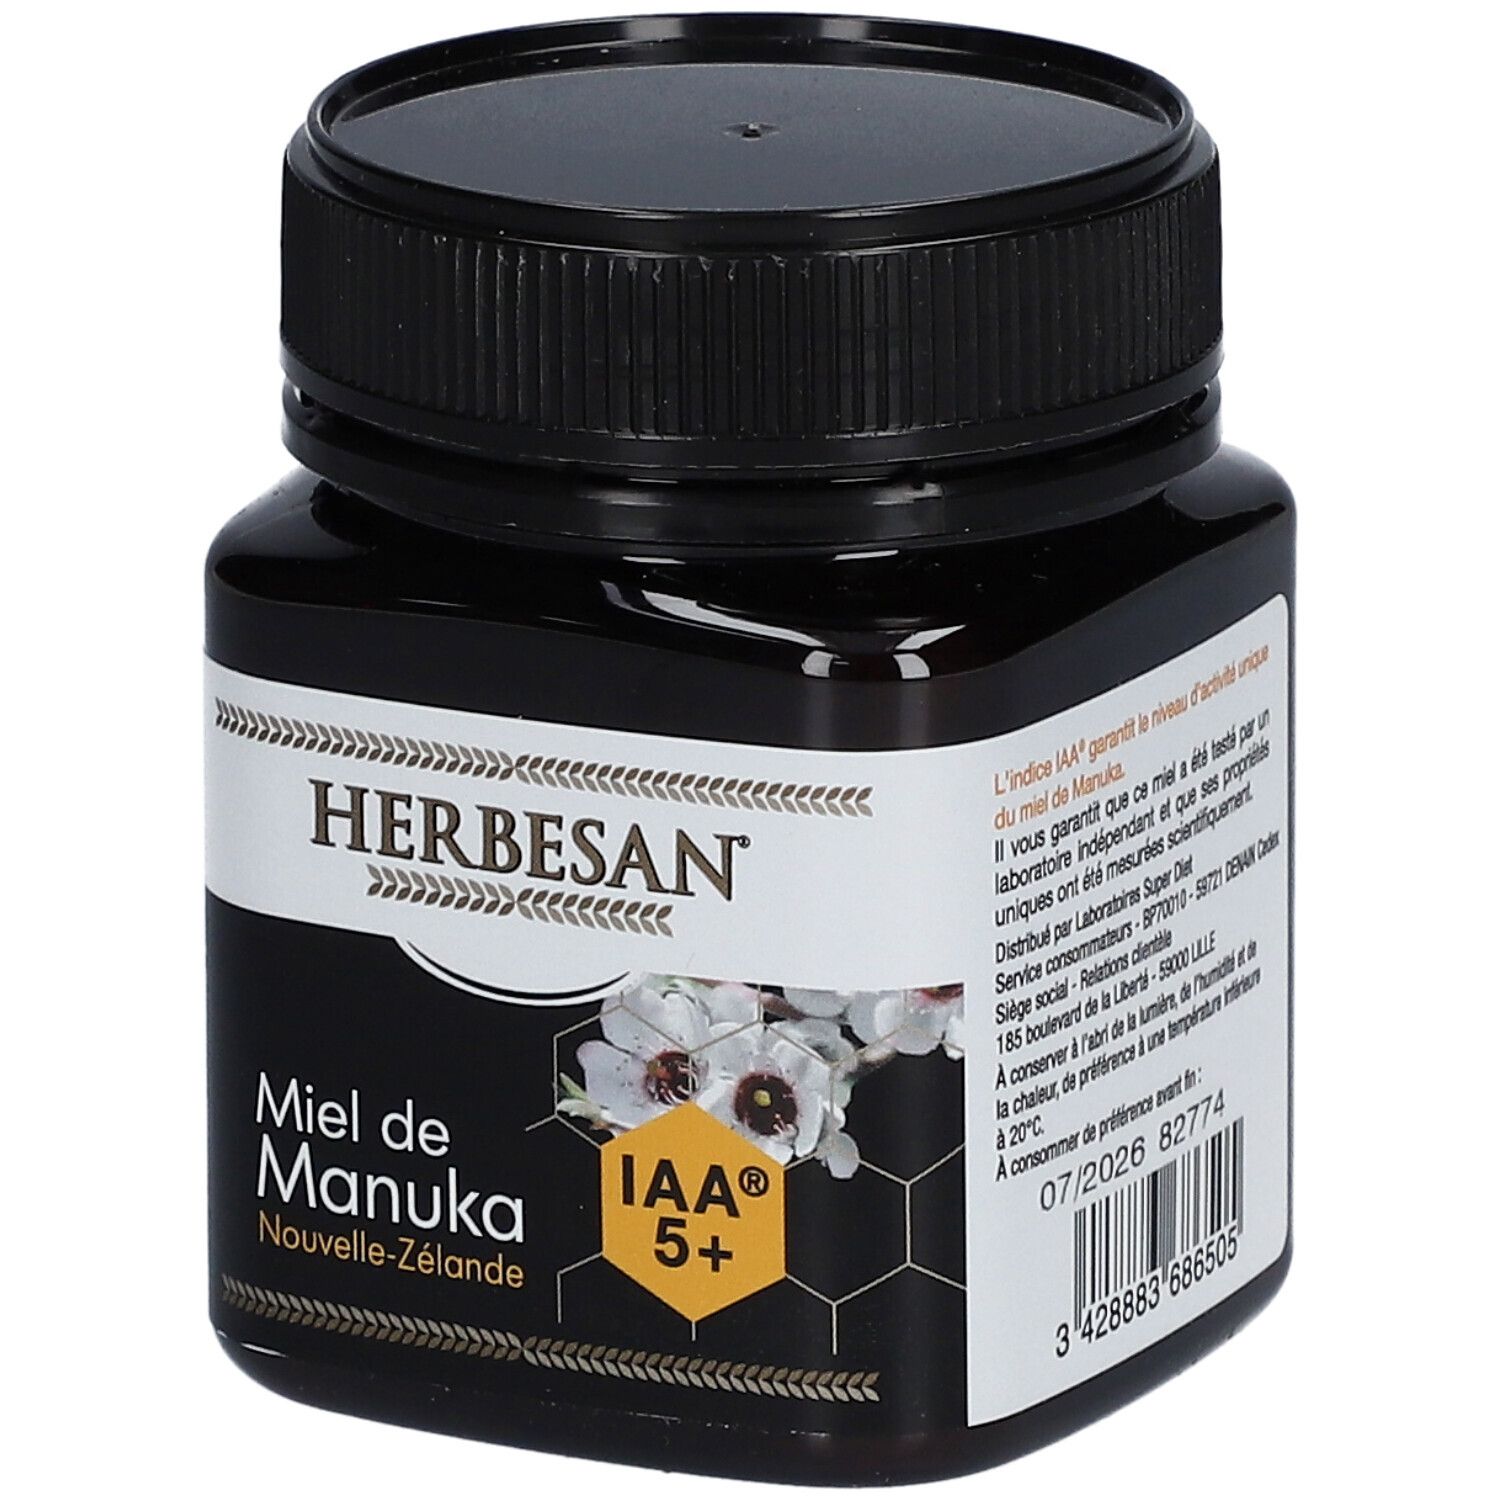 Herbesan® Miel de Manuka IAA 5+